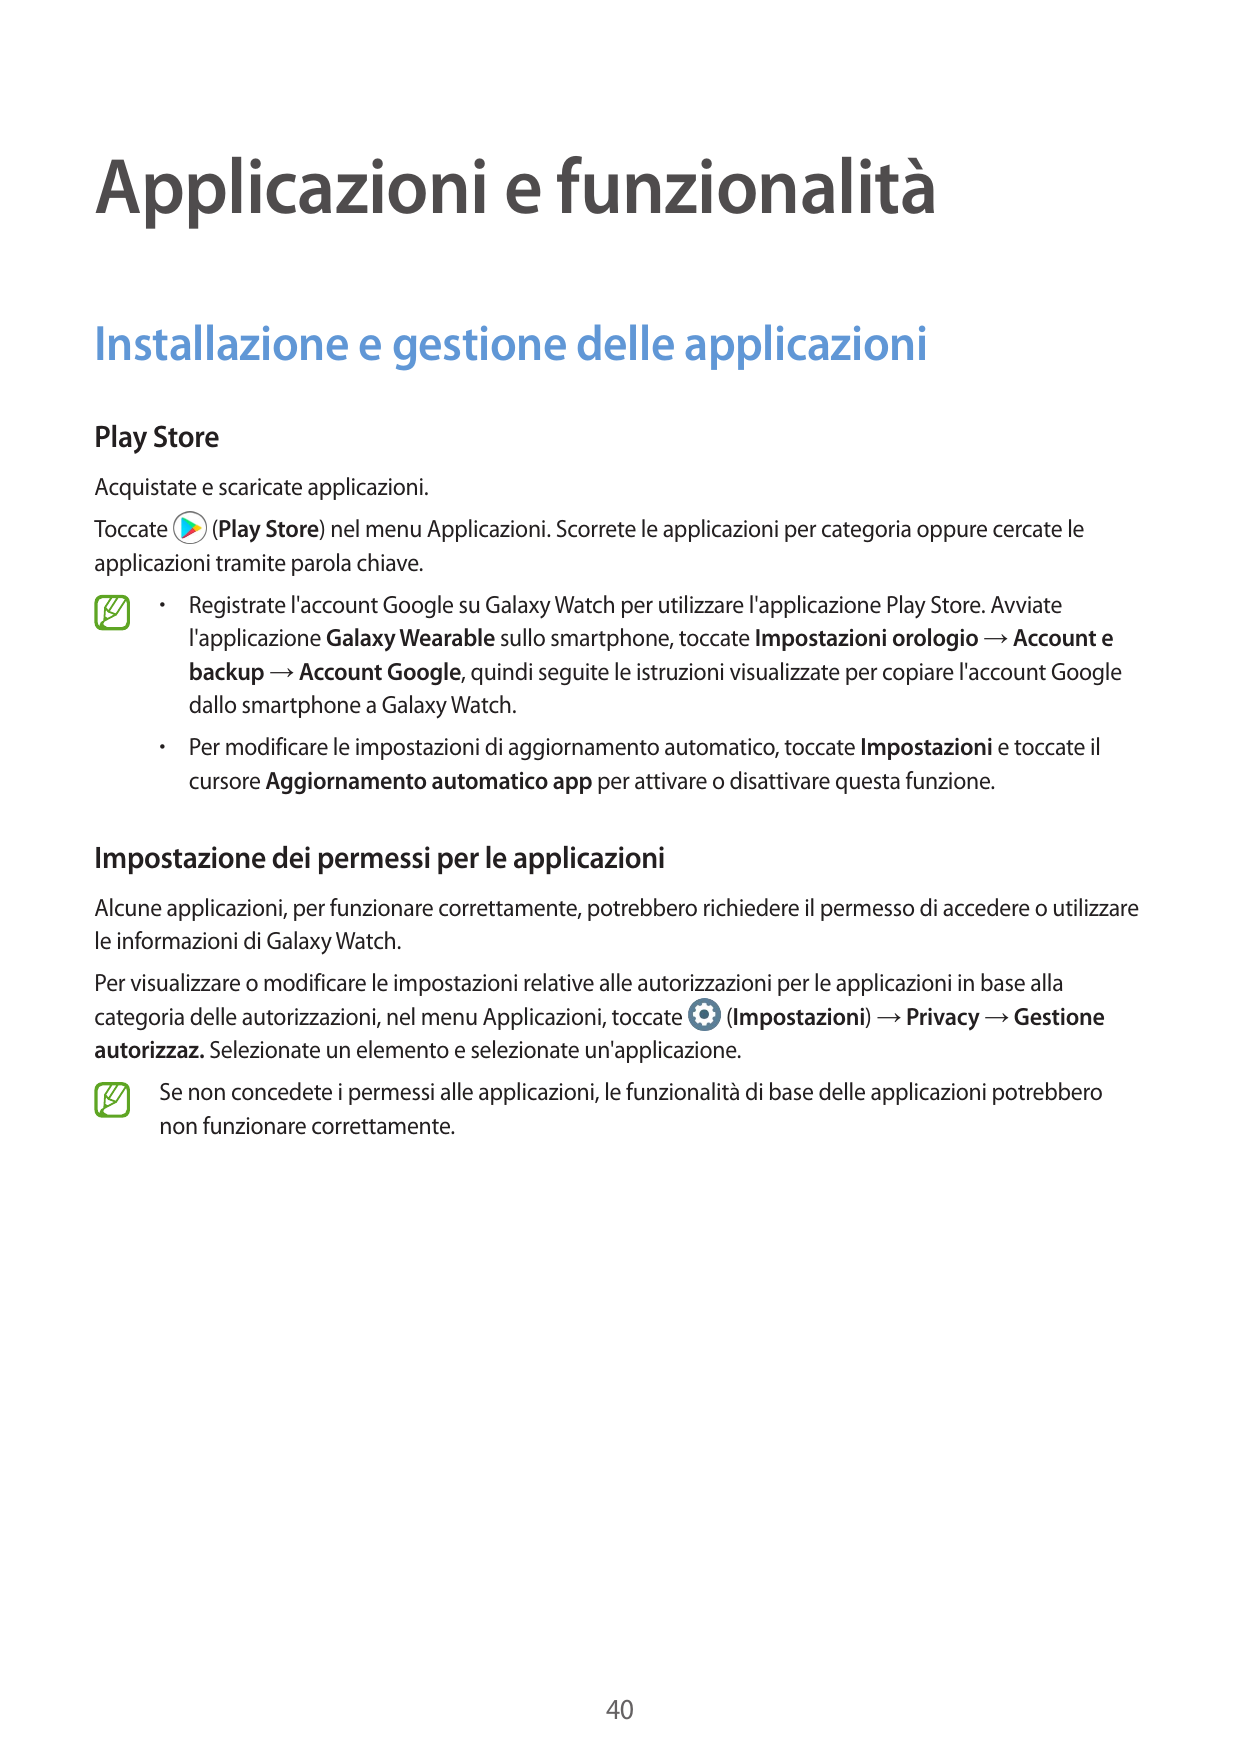 Applicazioni e funzionalitàInstallazione e gestione delle applicazioniPlay StoreAcquistate e scaricate applicazioni.(Play Store)